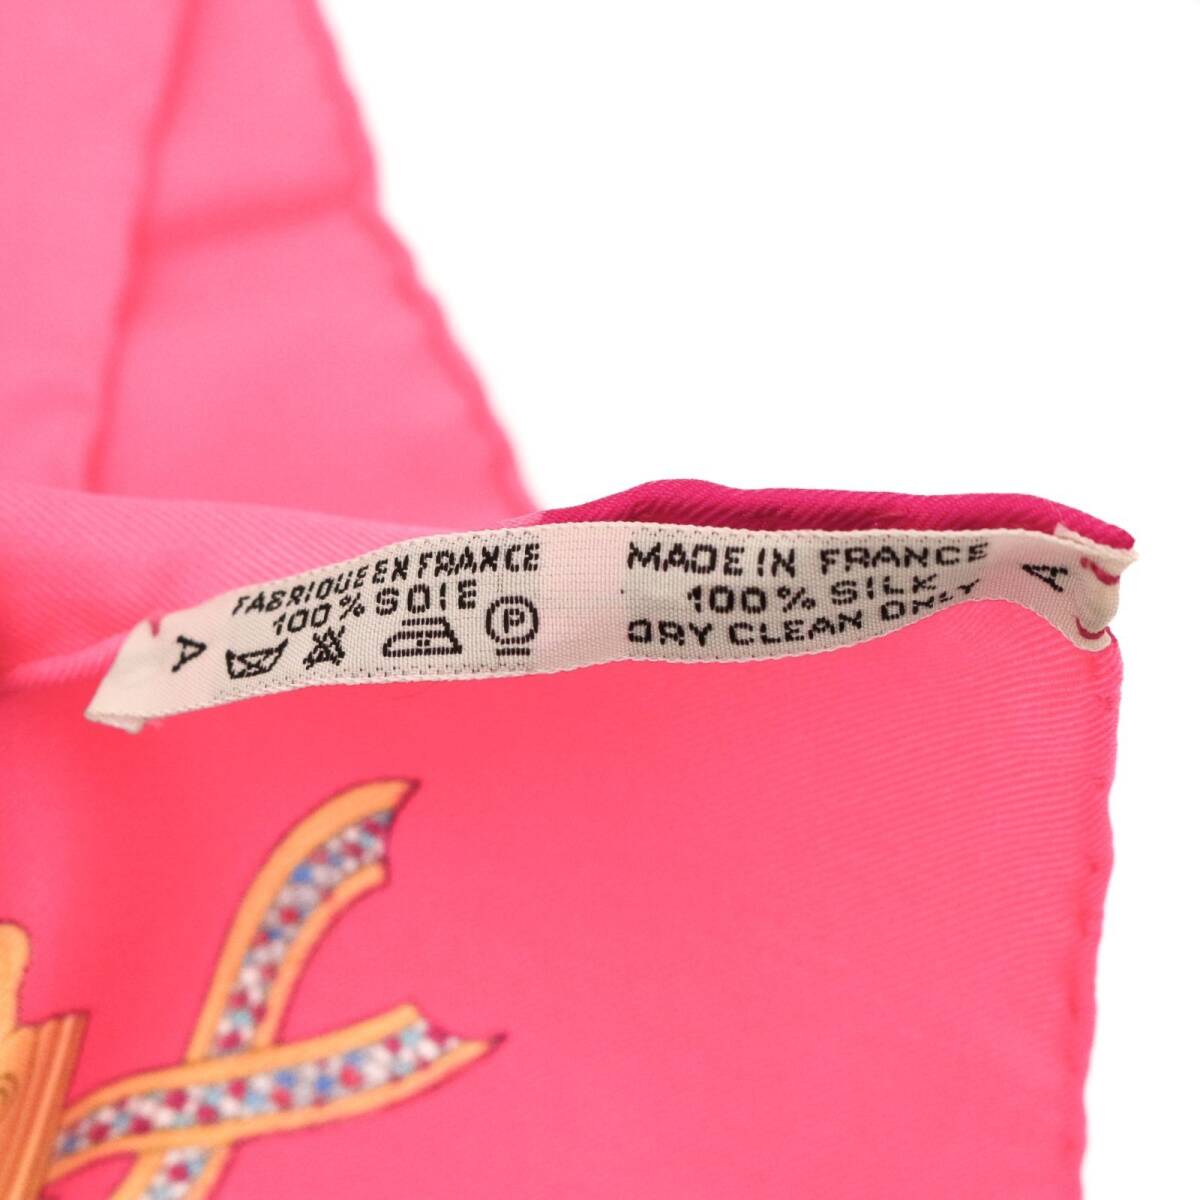 エルメス フランス革命を記念して スカーフ LIBERTE EGALITE カレ 90 スカーフ 大判 シルク ピンク pink HERMES